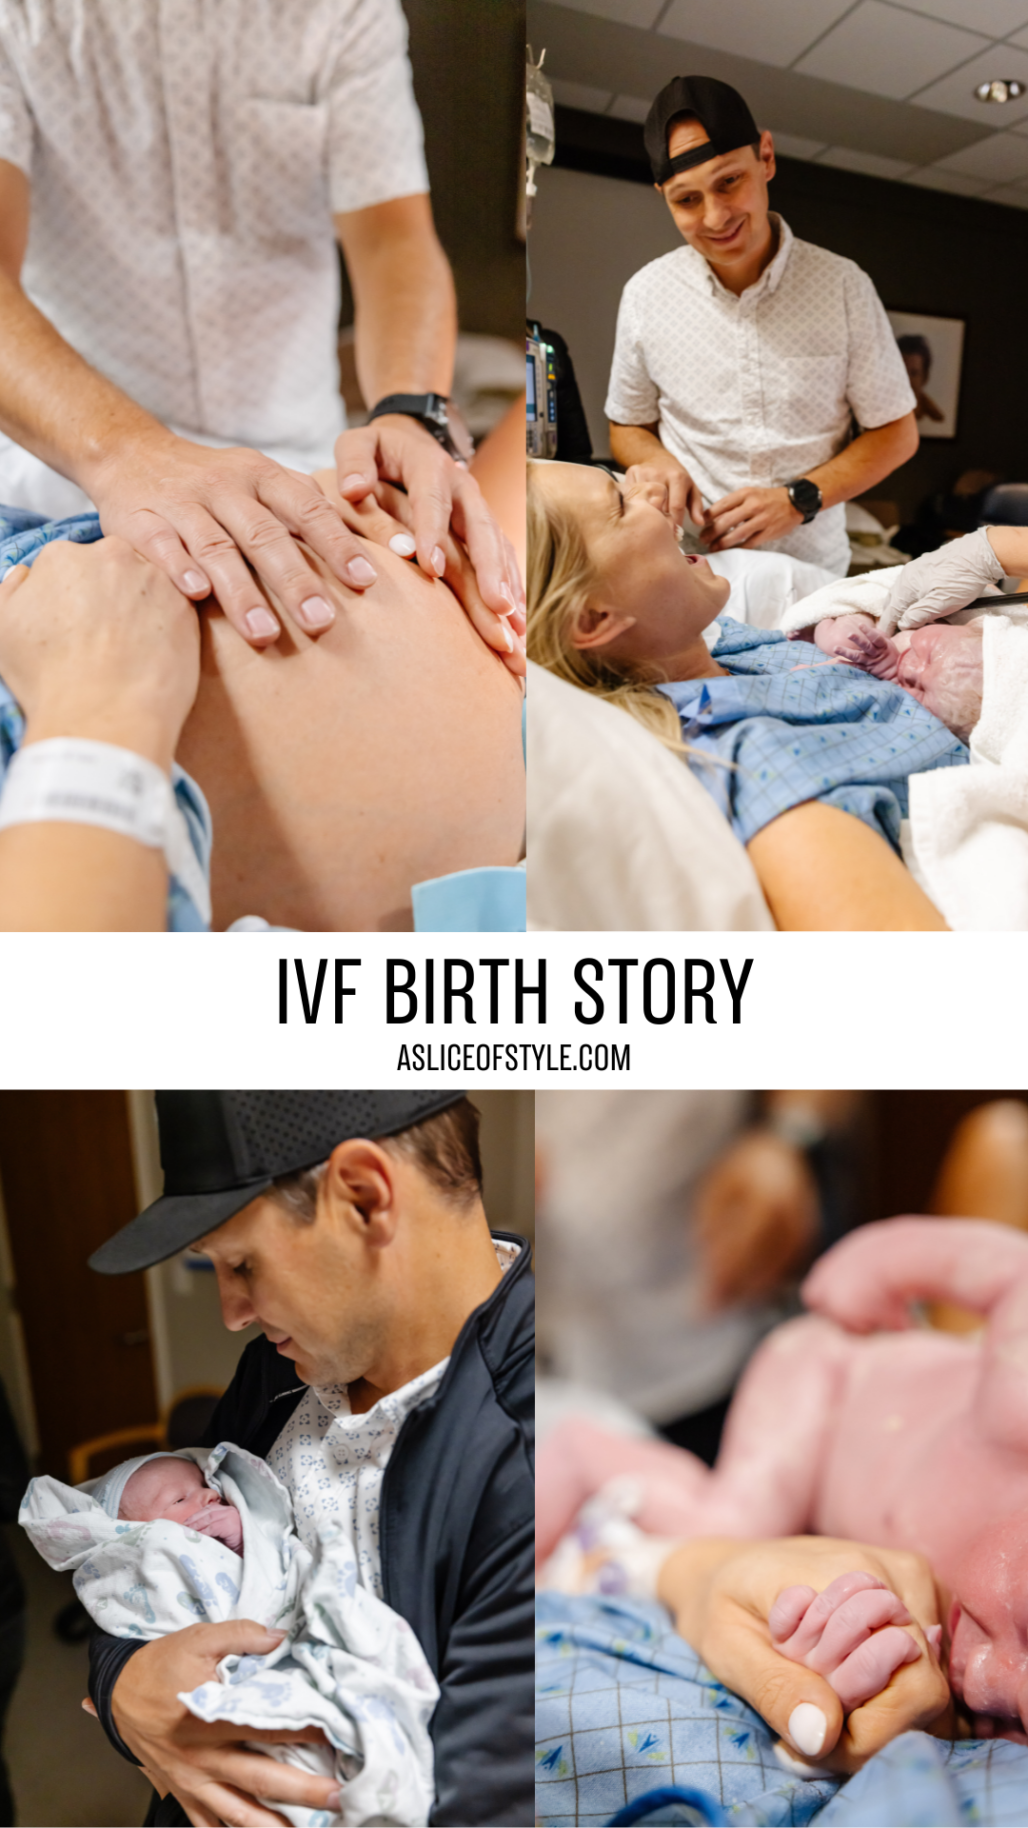 IVF birth story